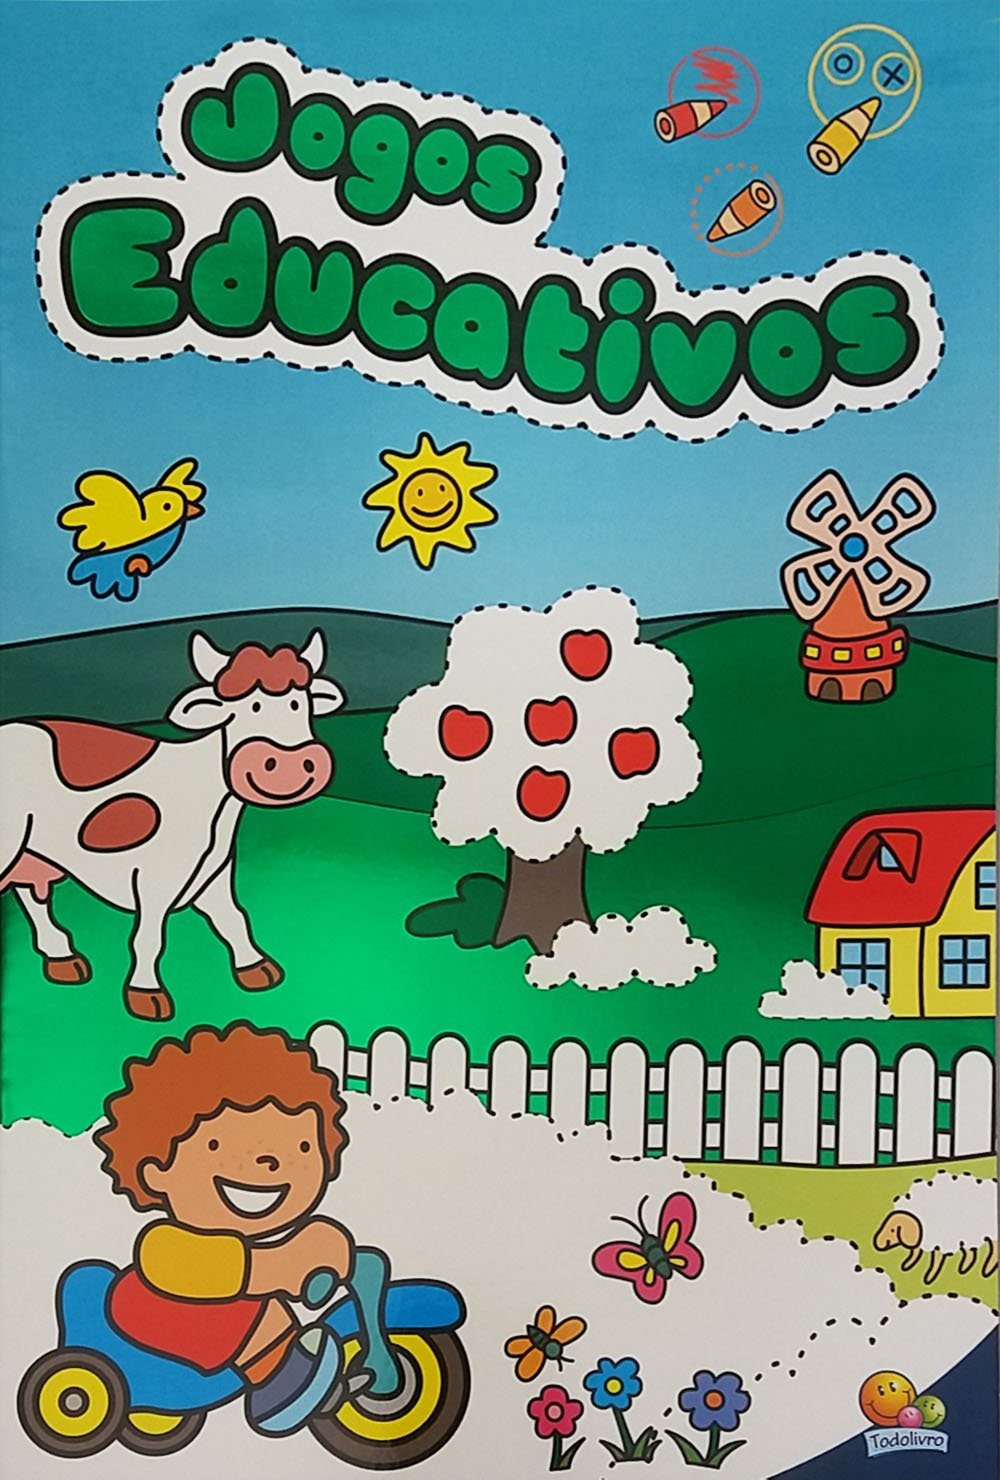 Site com livros infantis e jogos educativos gratuitos - Escola Game 